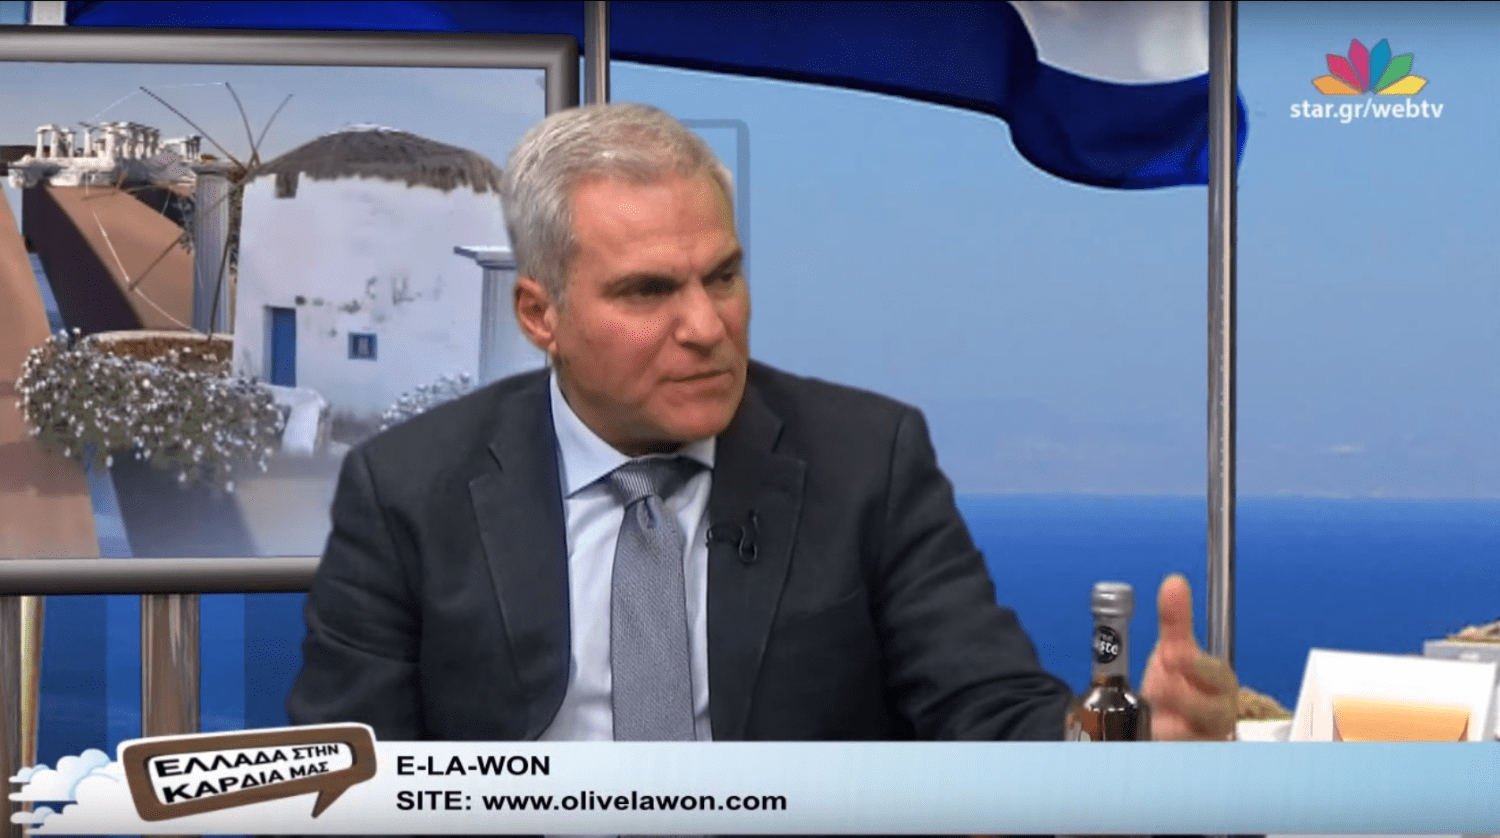 Ο Γιάννης Καμπούρης μιλάει για το E-LA-WON στην εκπομπή “Ελλάδα στην Καρδιά μας” του StarTV